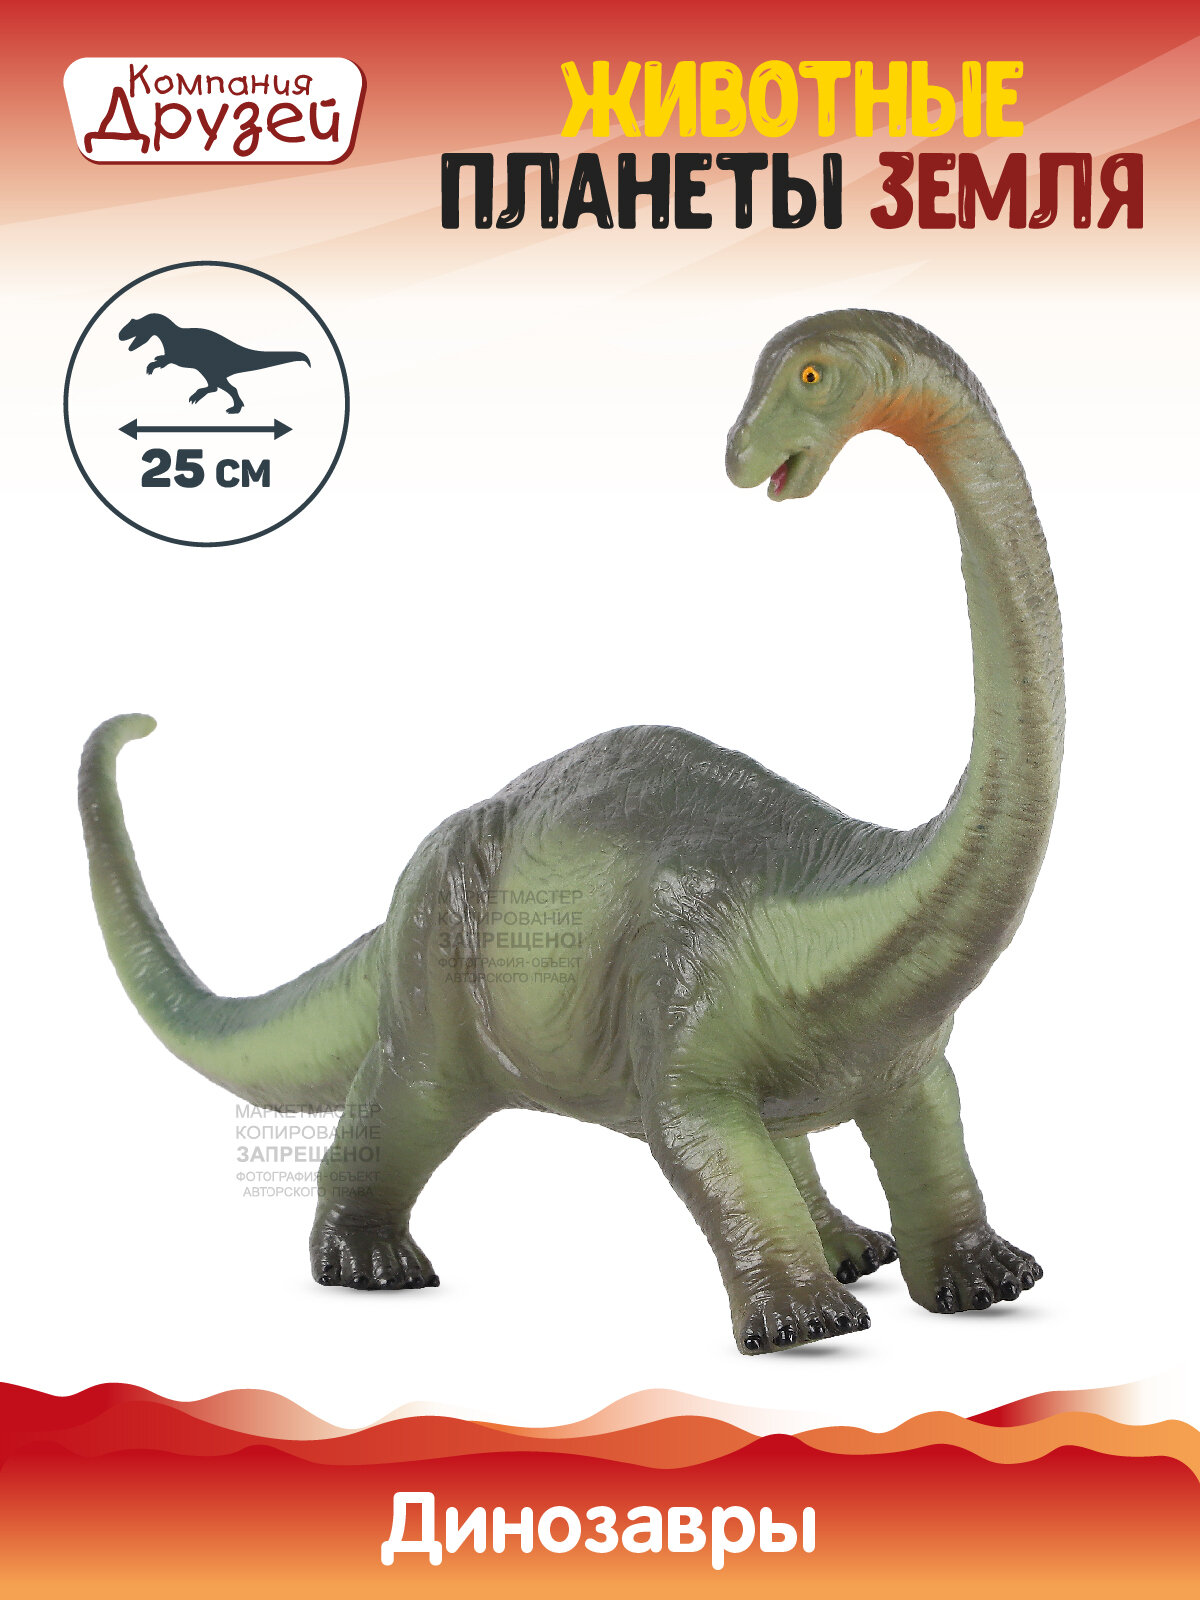 Игрушка для детей Динозавр ТМ компания друзей, серия Животные планеты Земля, игрушечное доисторическое животное, эластичный пластик, JB0208314